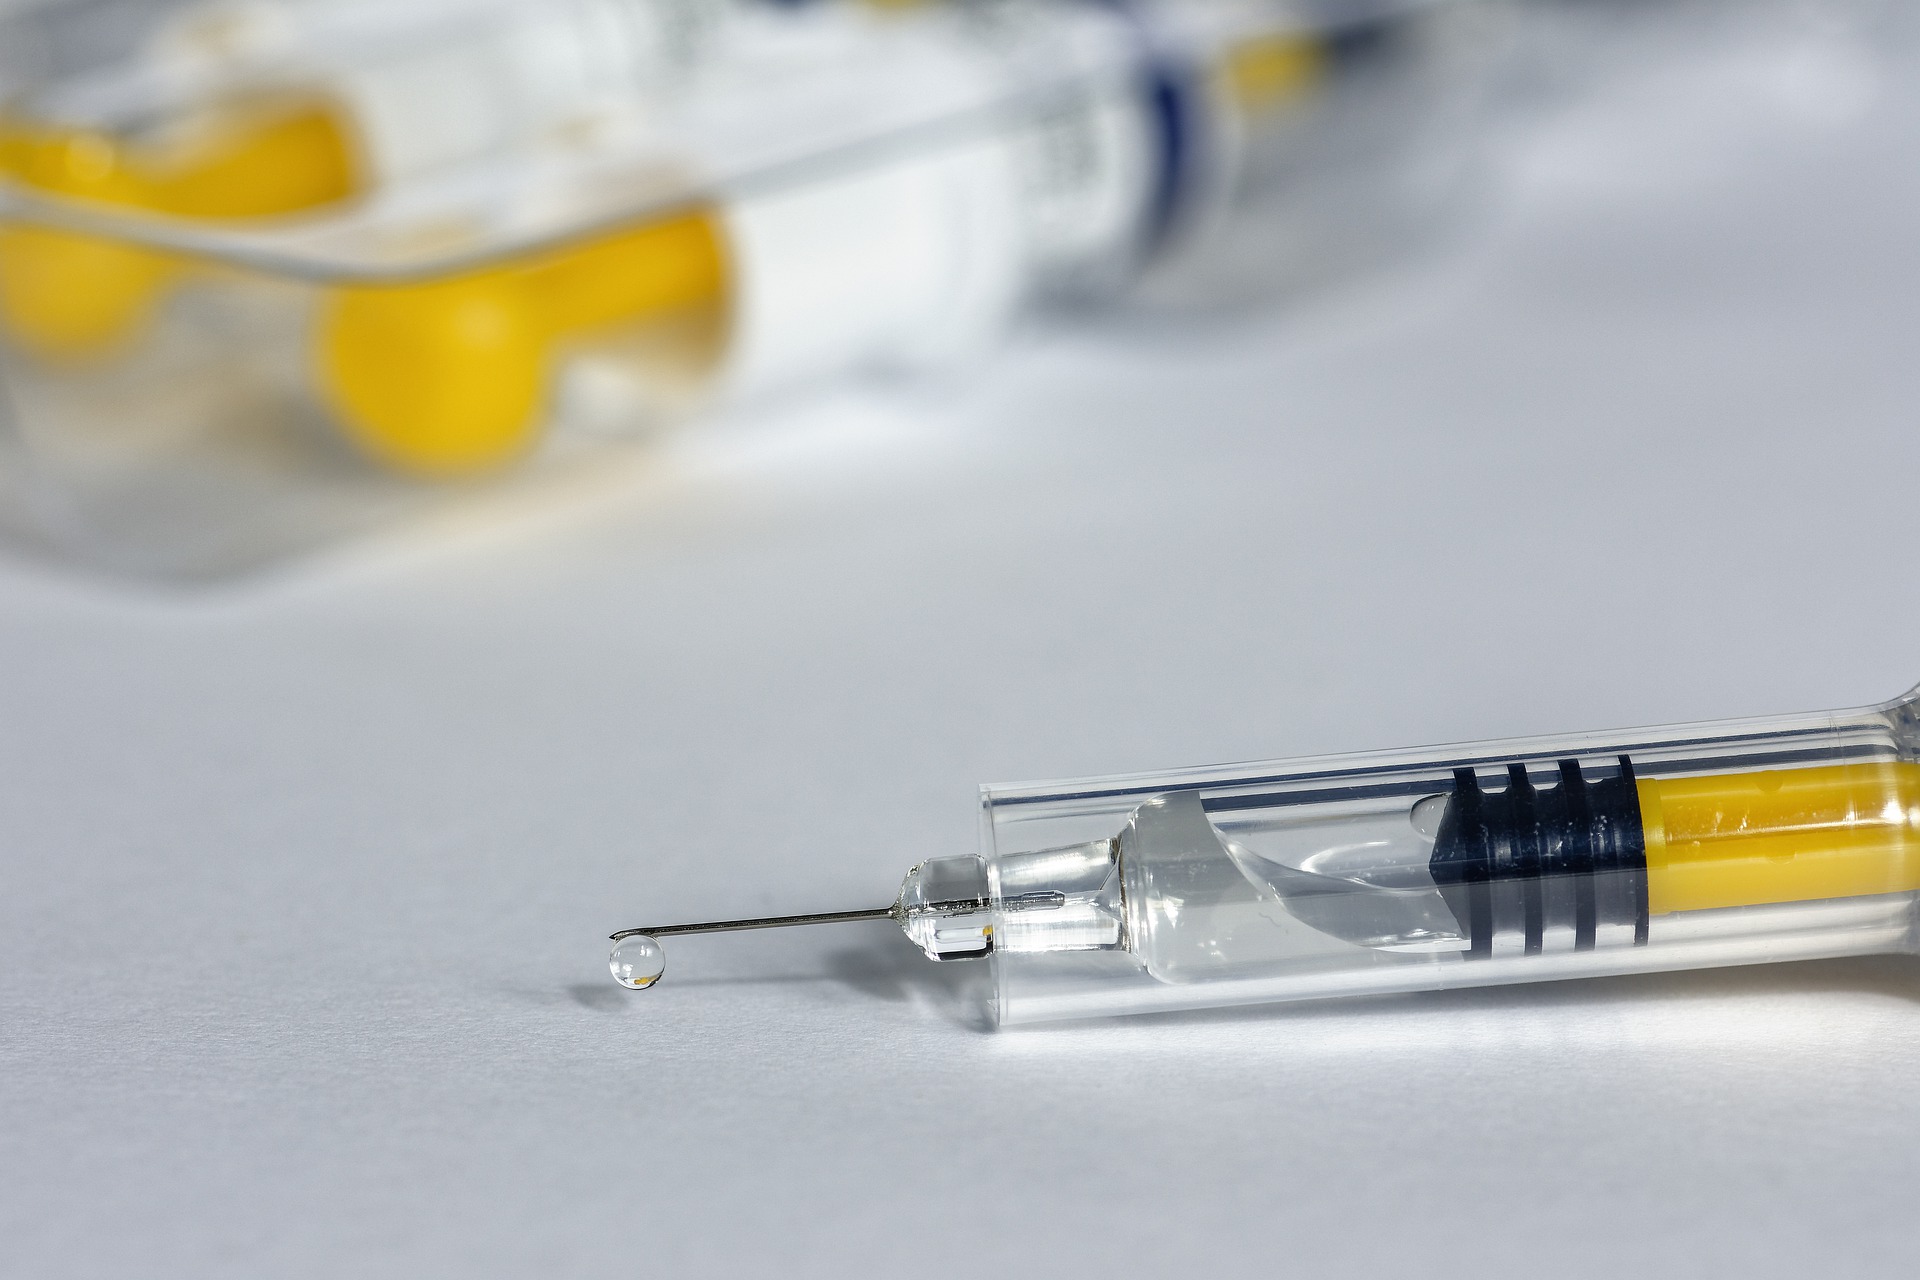 Julgamento irá influenciar política de vacinação contra Covid-19/Pixabay